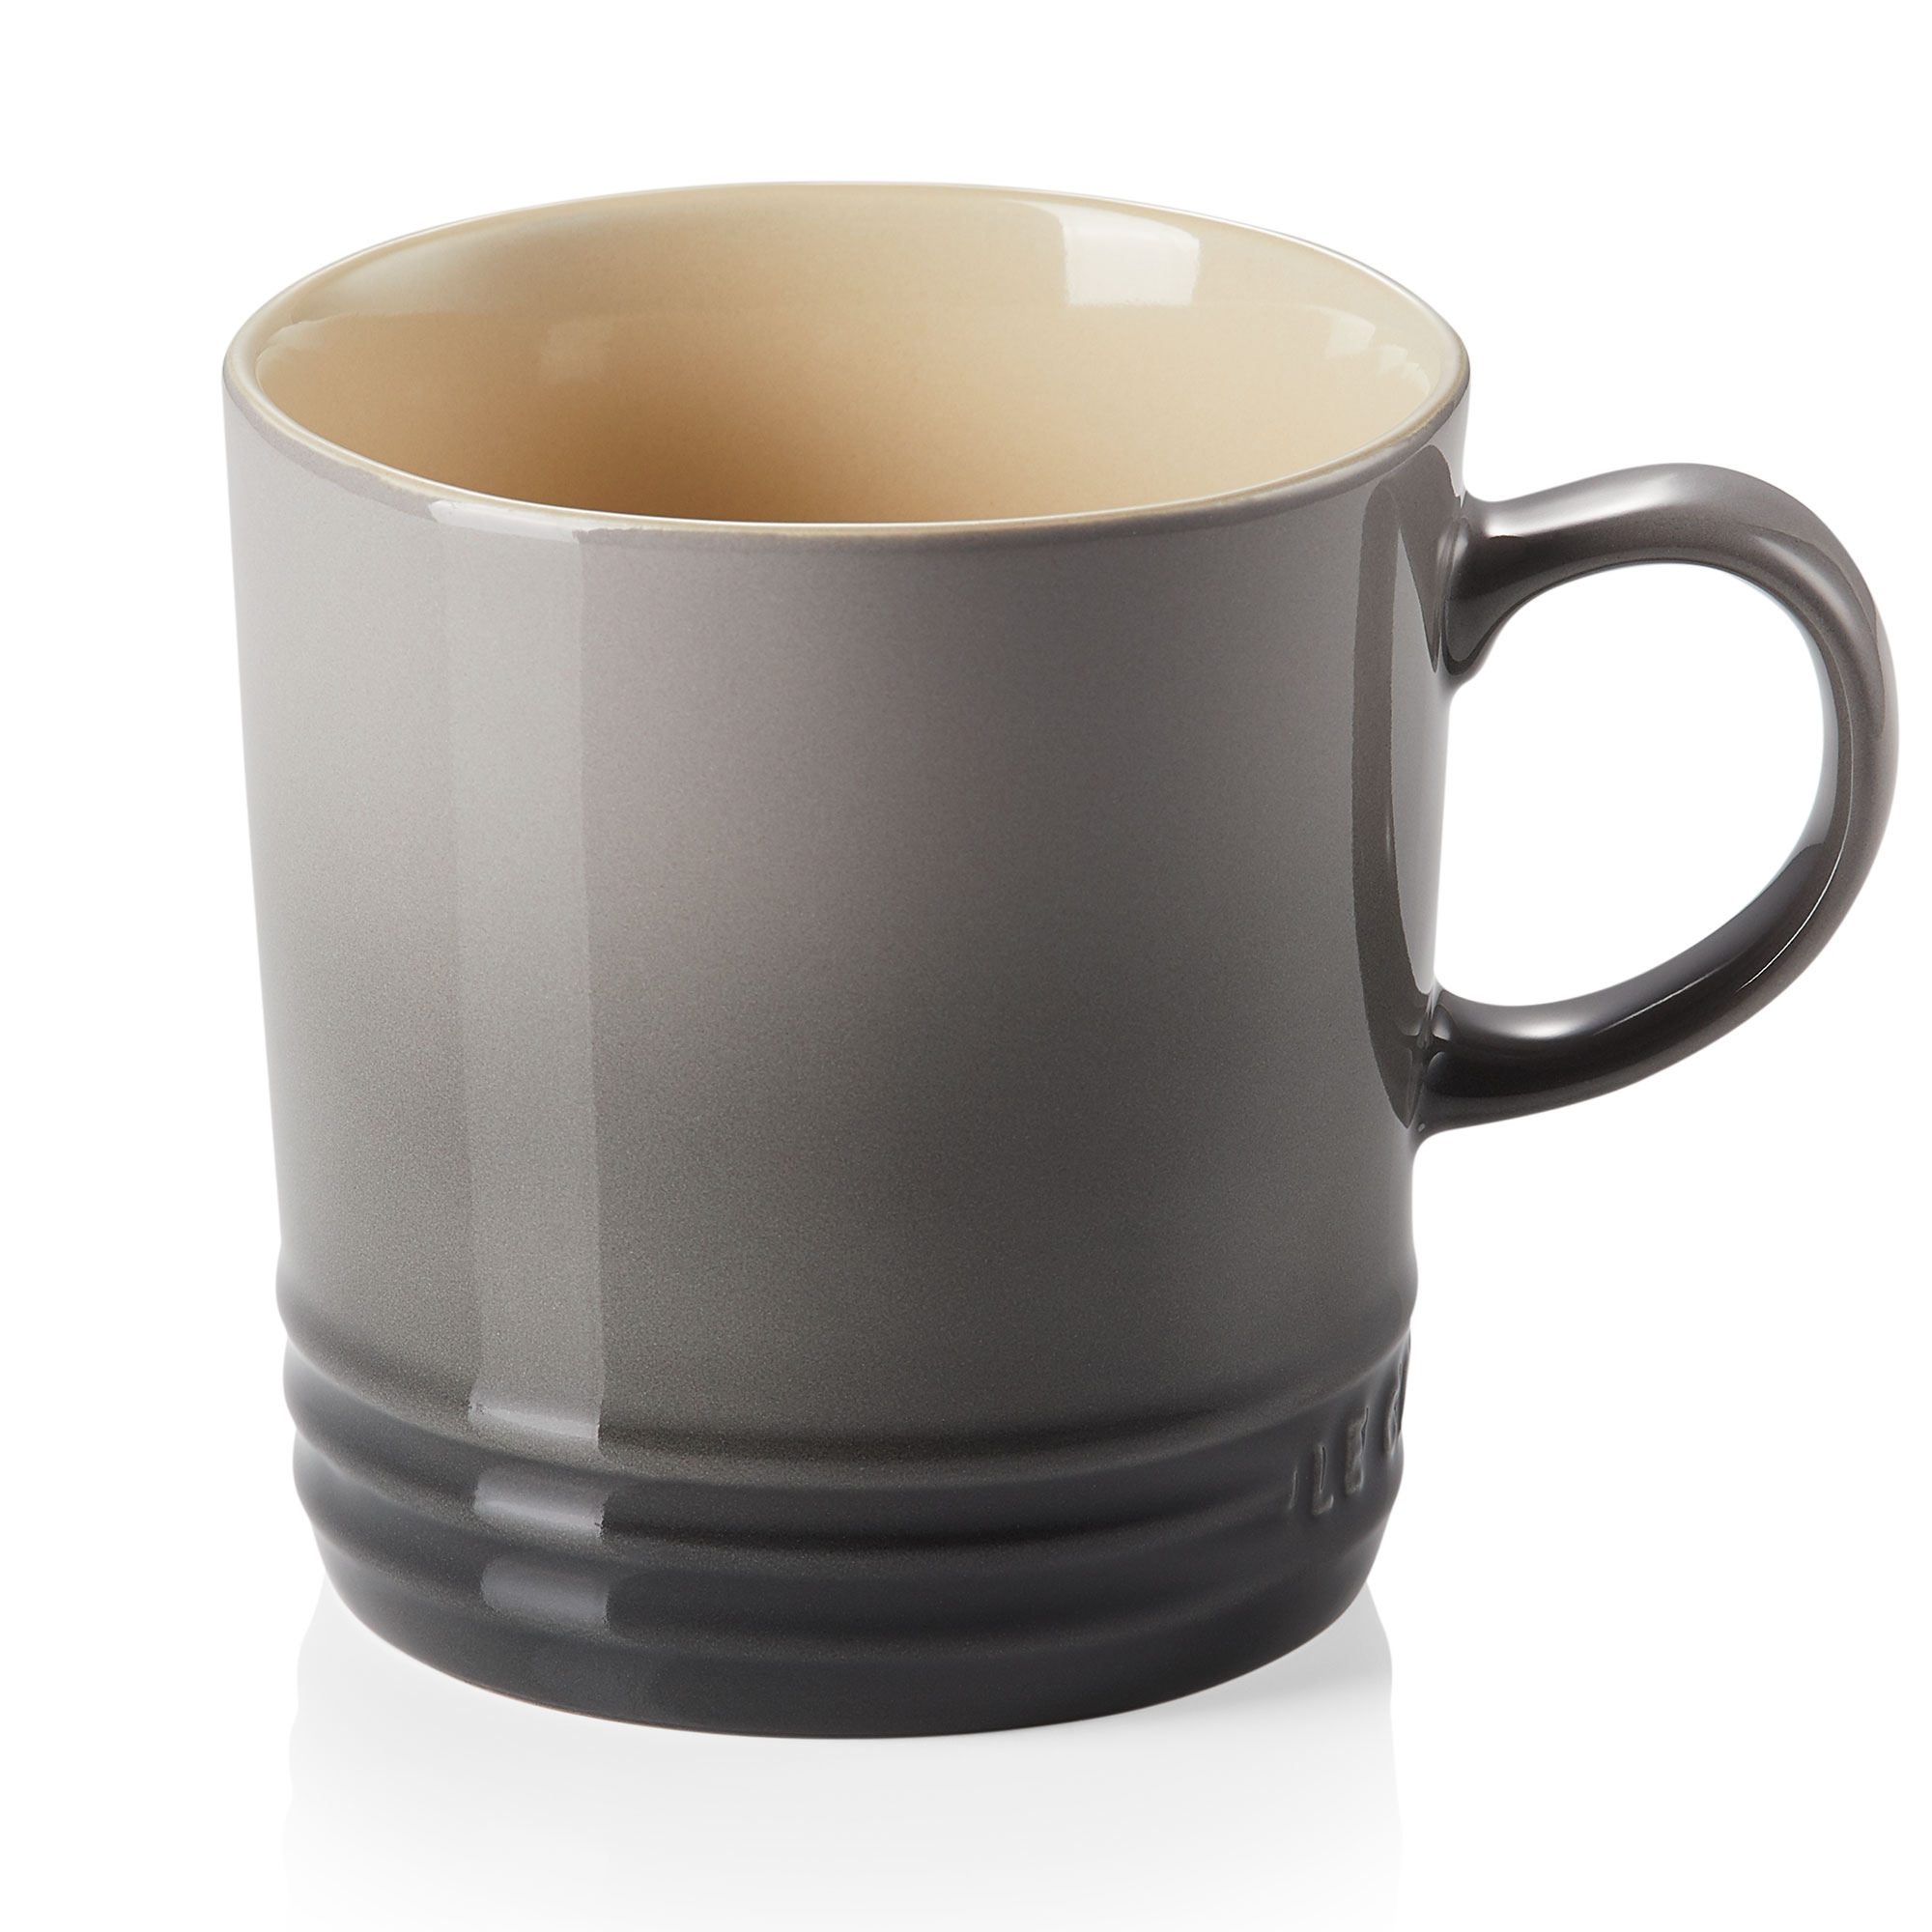 Le Creuset - Mug 350 ml